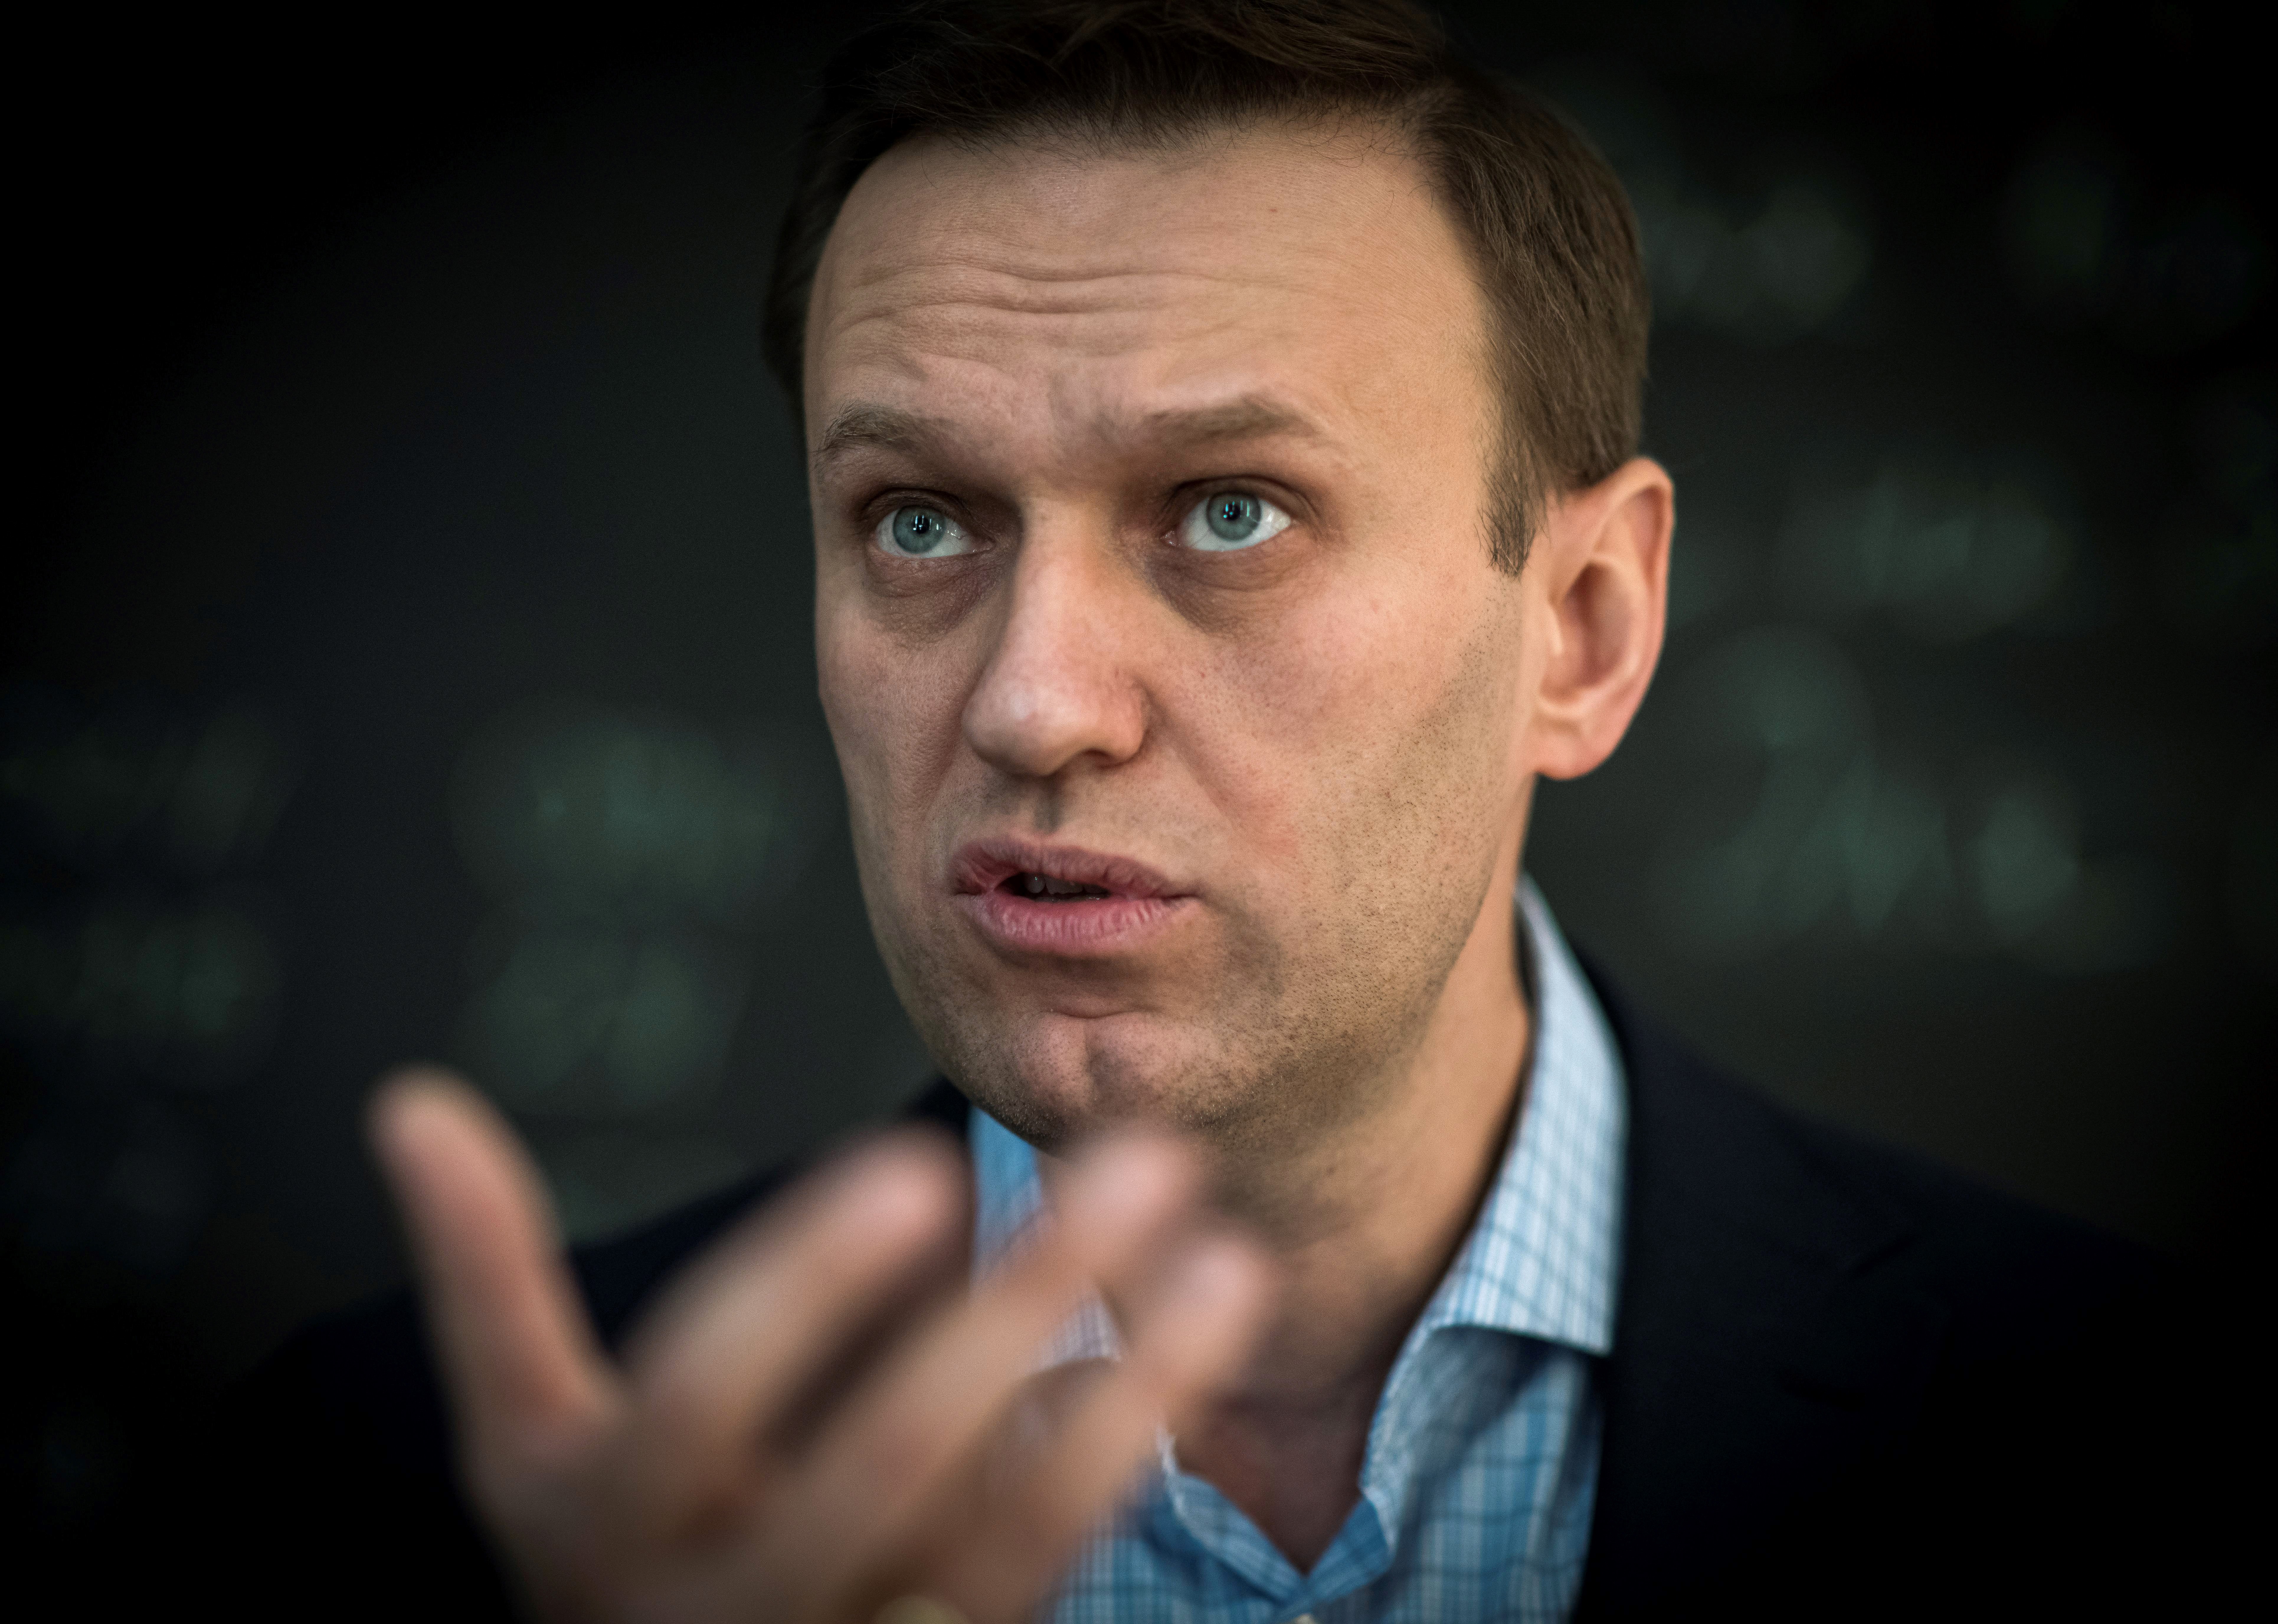 Az EU négy fontos orosz tisztviselőt tiltott ki az országaiból Navalnij letartóztatása miatt, az USA is szankciókat tervez